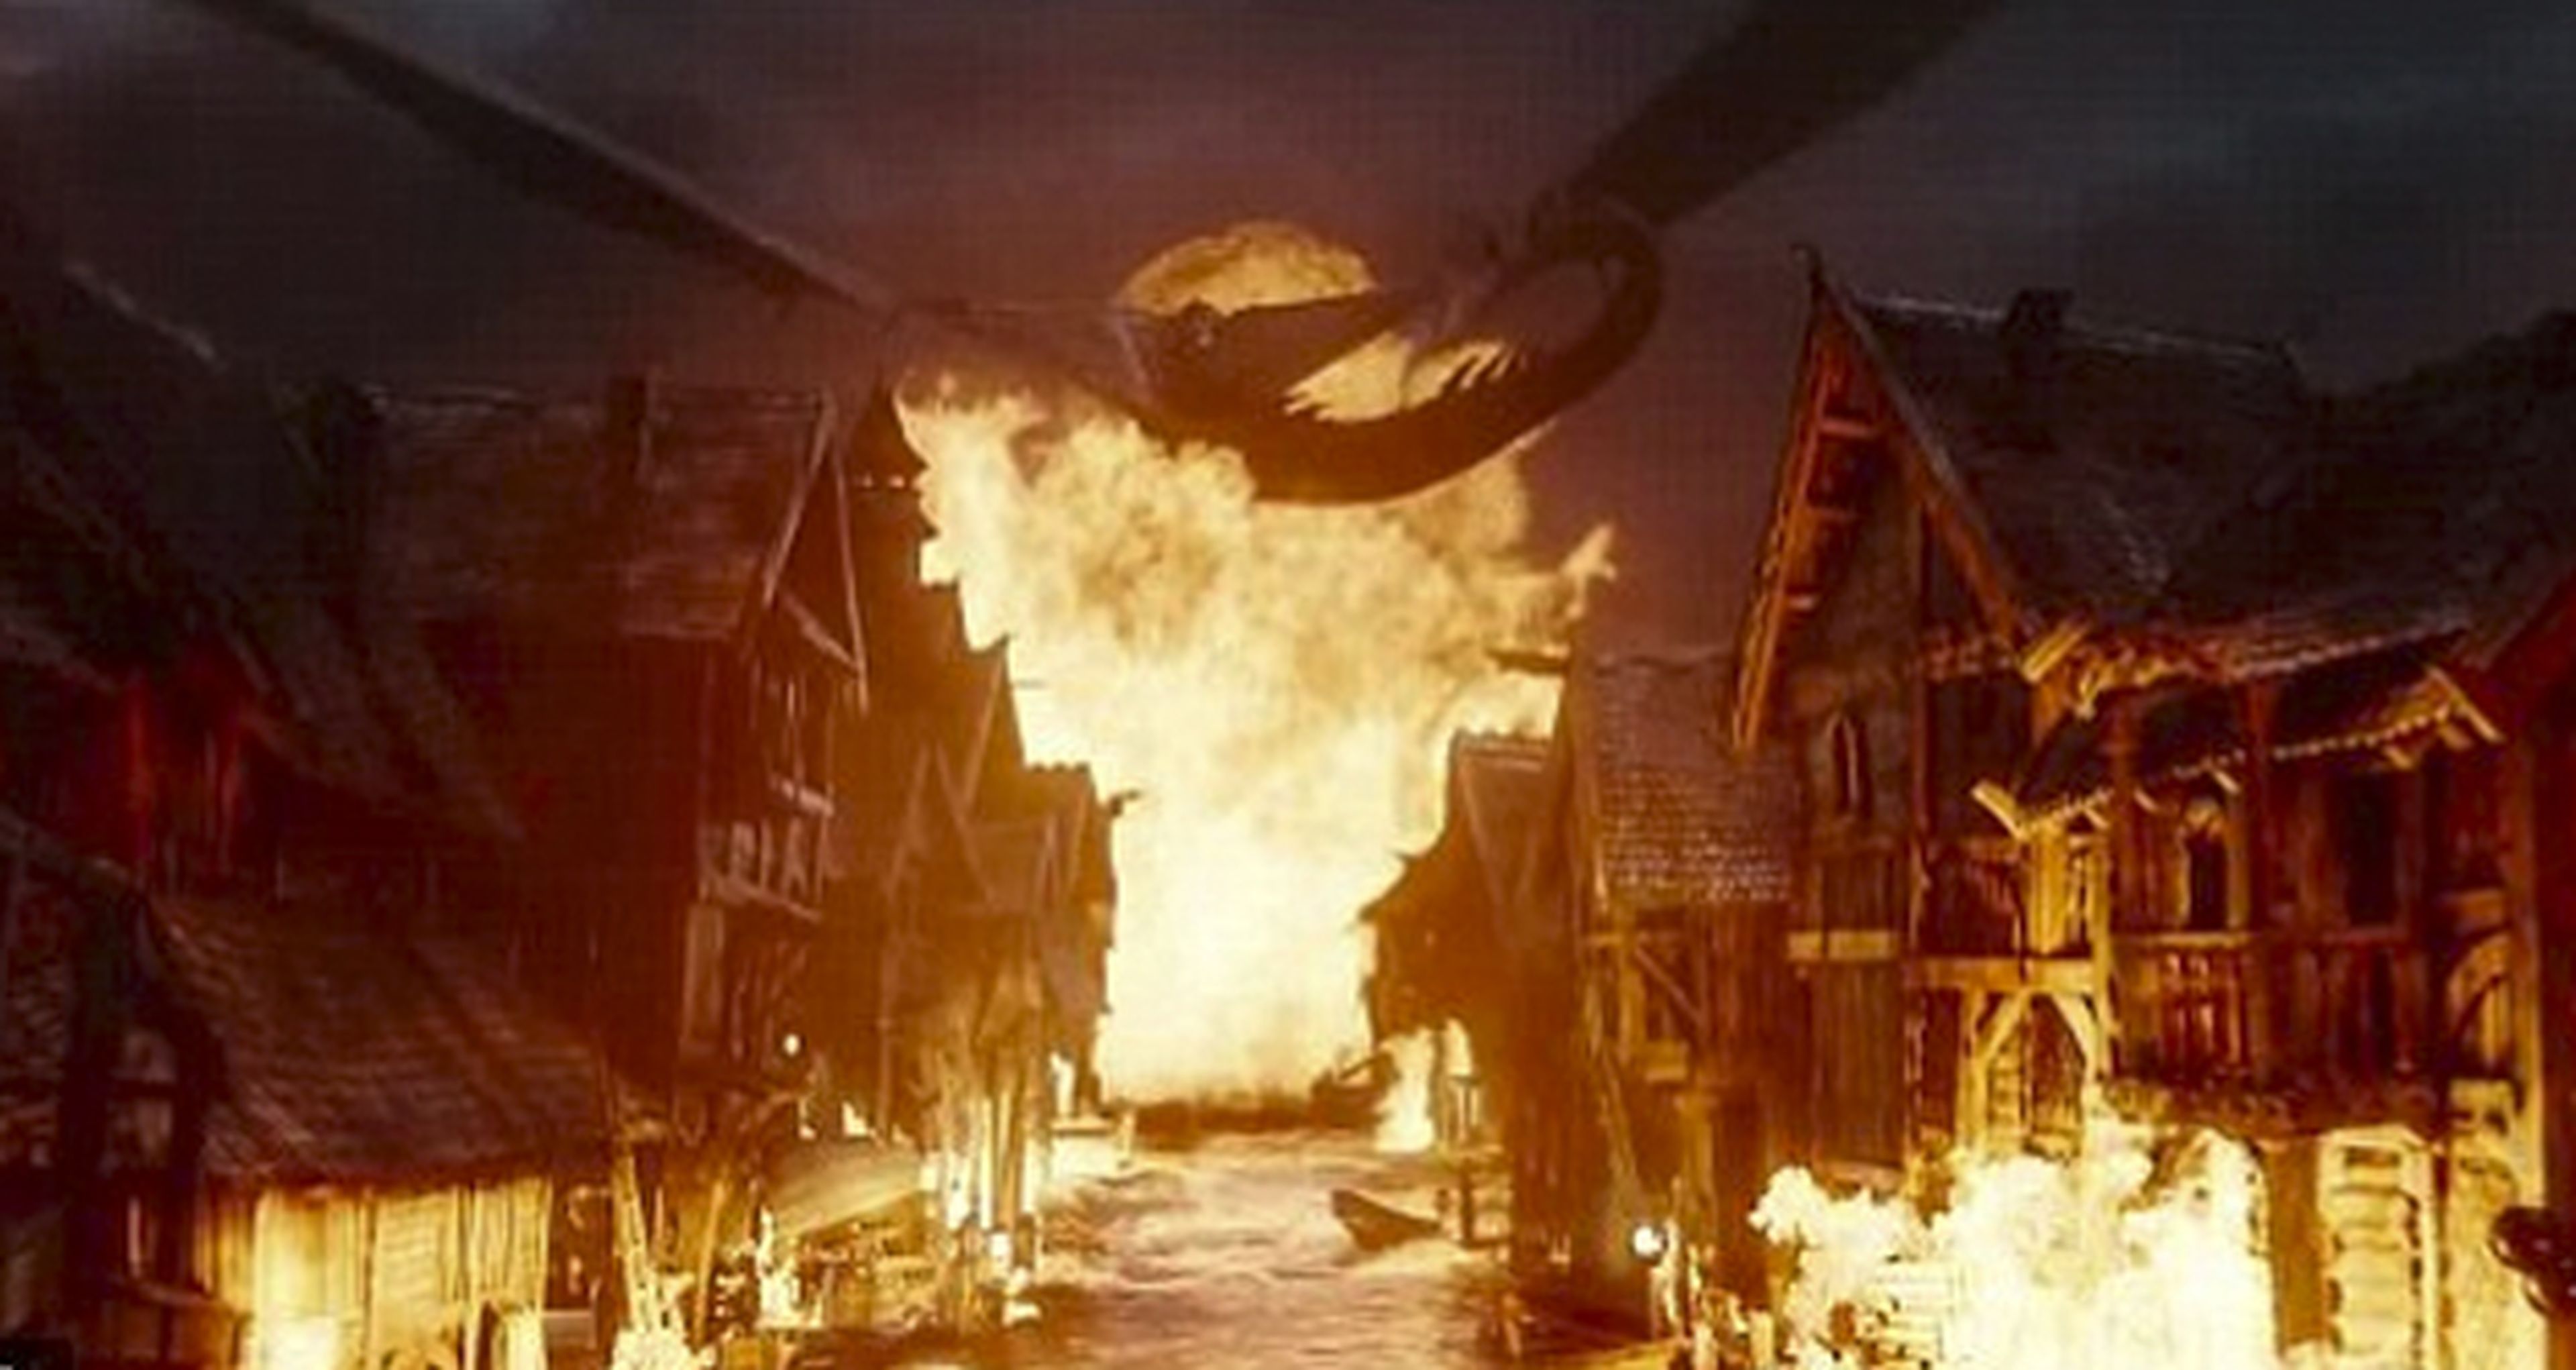 La batalla de los cinco ejércitos de El hobbit durará 20 minutos del metraje total